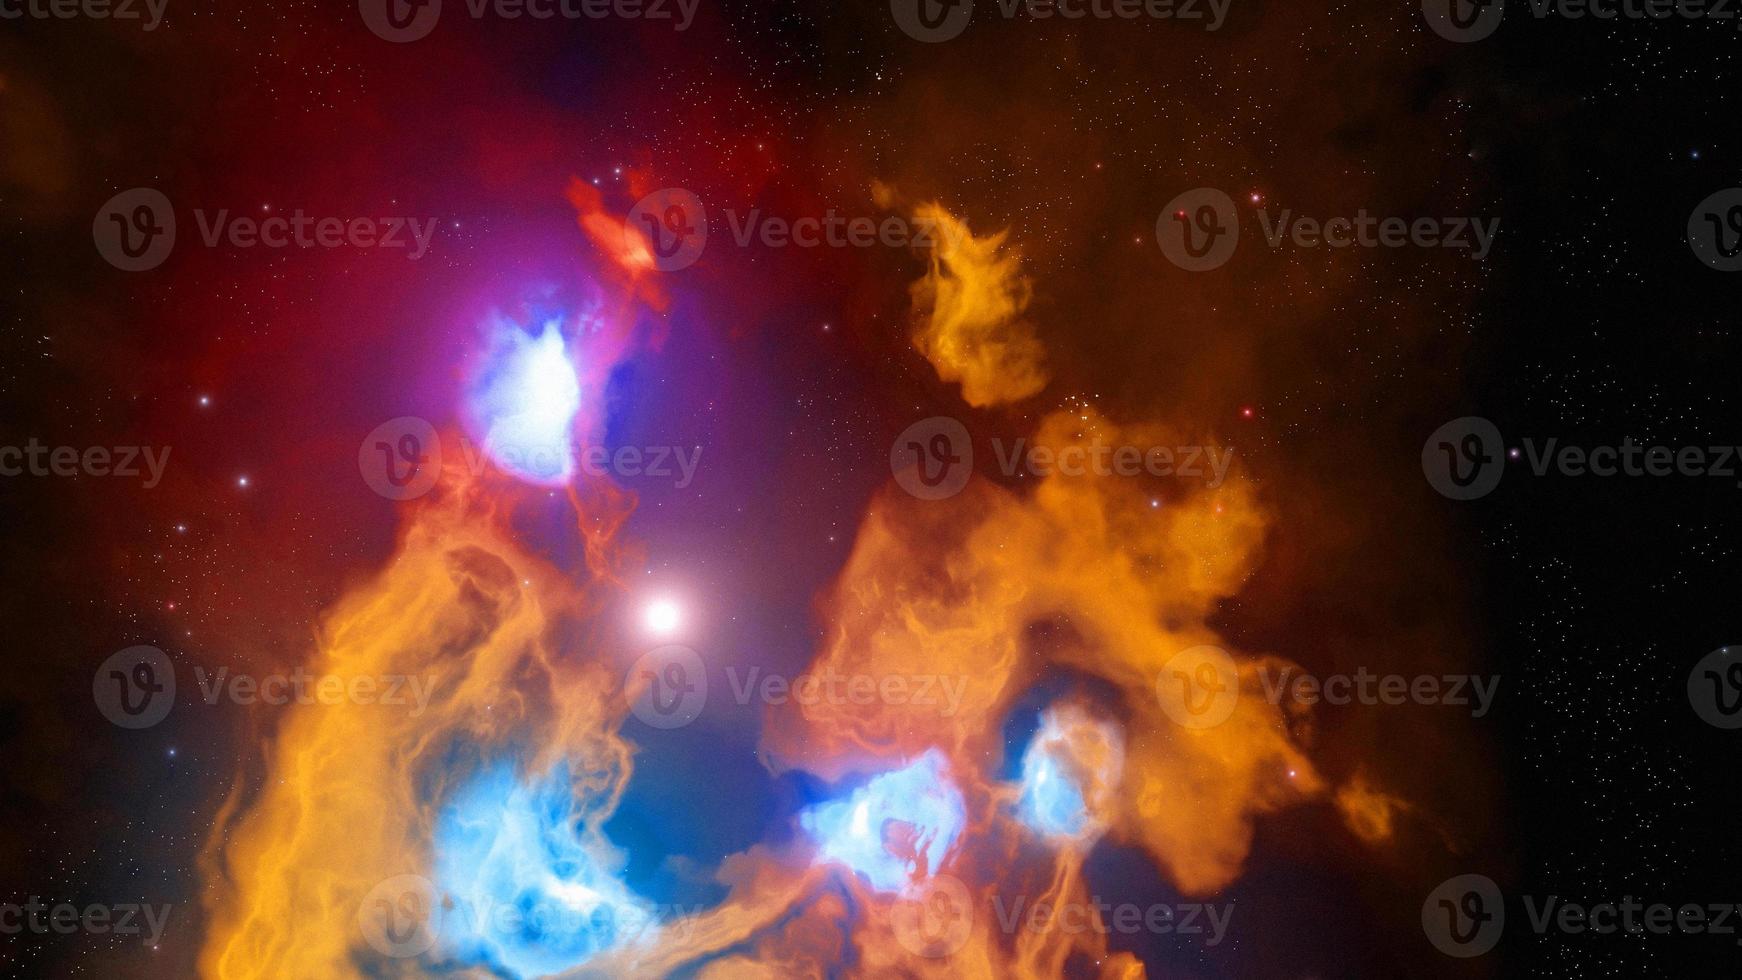 galassia nebulosa oscura dello spazio arancione nello spazio profondo e bellezza dell'universo foto